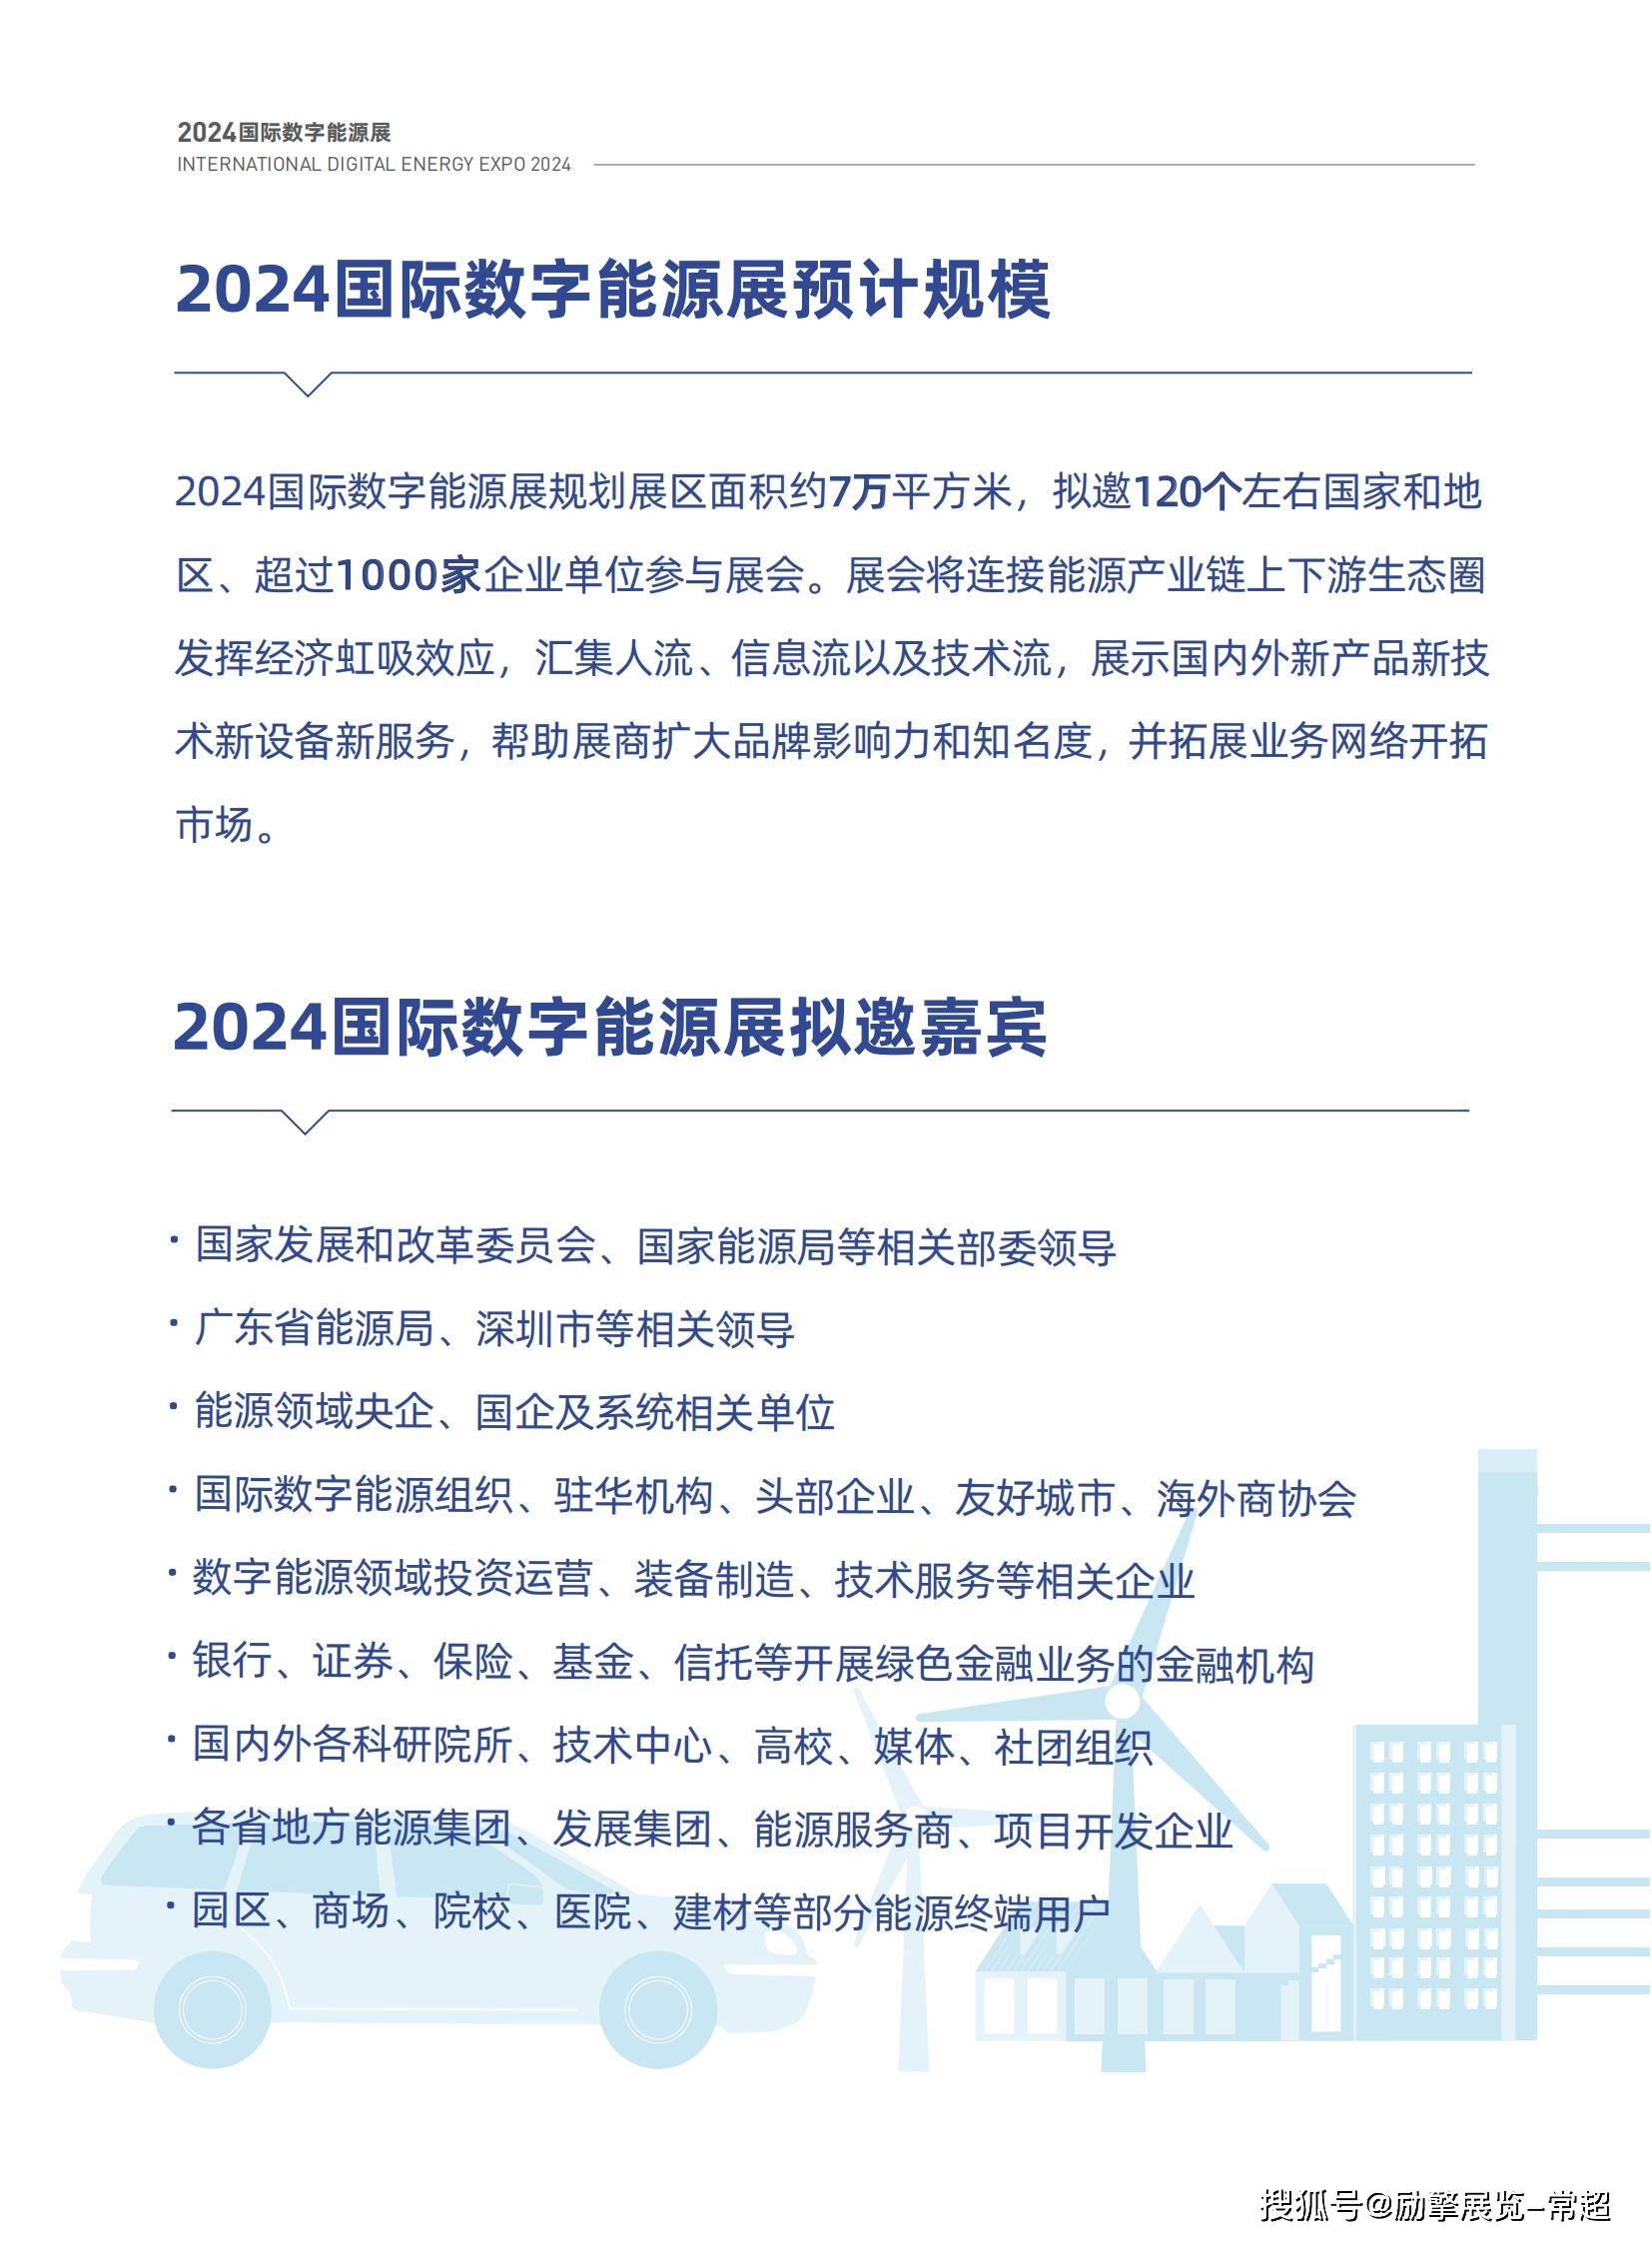 idee2024深圳国际数字能源展览会